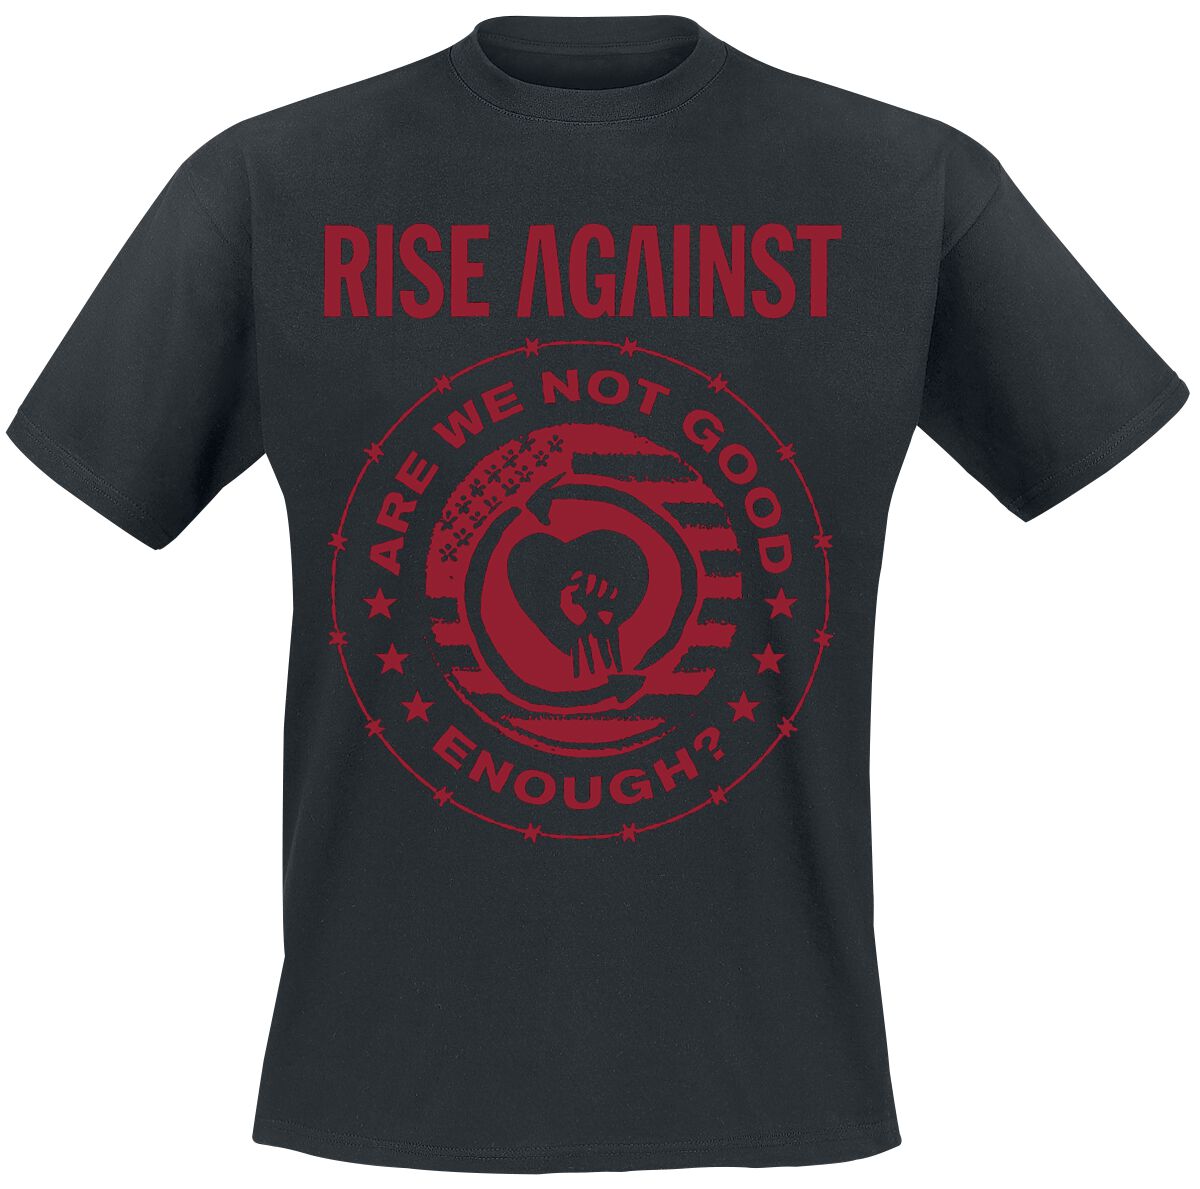 Rise Against T-Shirt - Good Enough - XXL - für Männer - Größe XXL - schwarz  - Lizenziertes Merchandise!